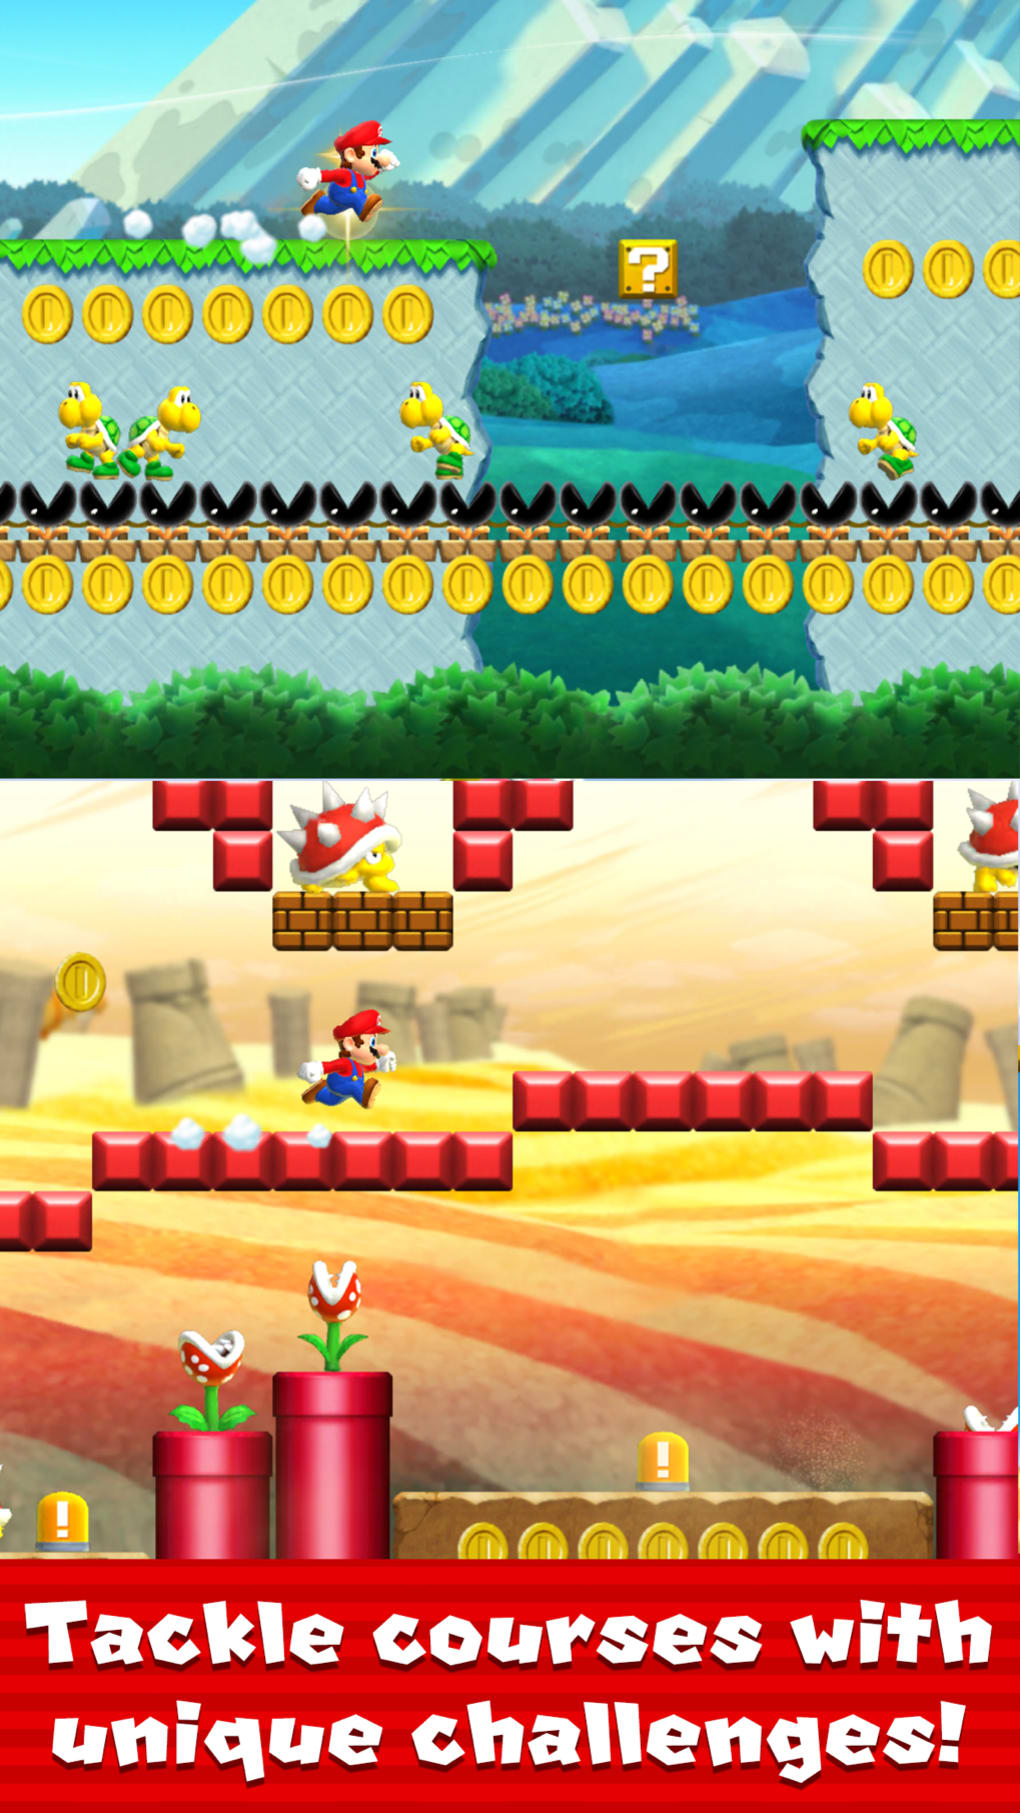 Jogo Super Mario Run é lançado para o iPhone - Pequenas Empresas Grandes  Negócios